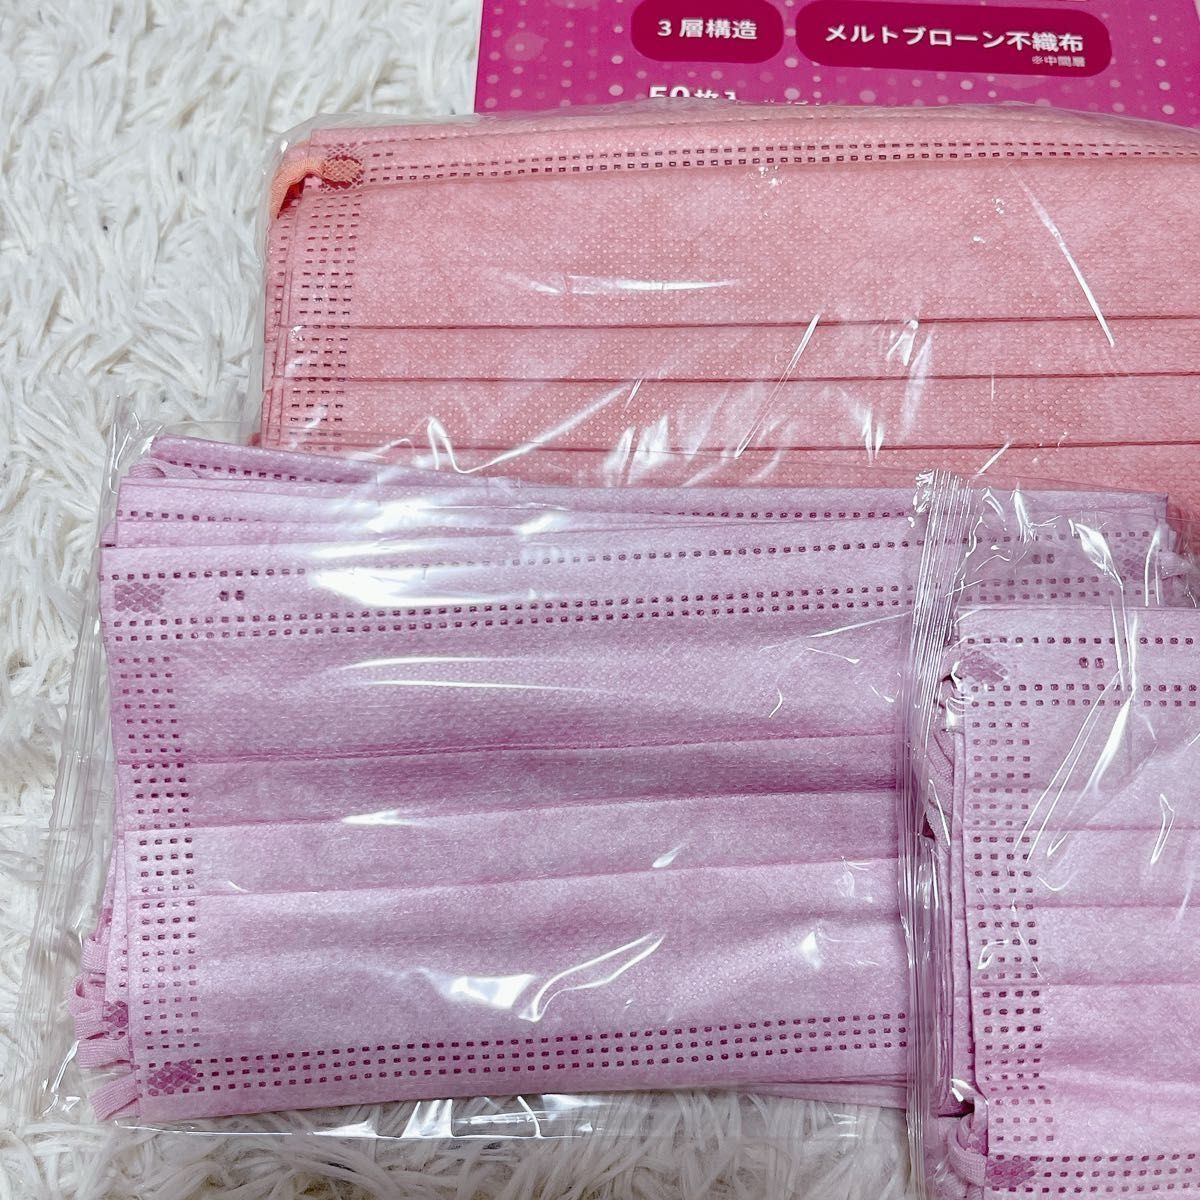 不織布マスク  ピンク系  50枚セット  花粉症  インフルエンザ  コロナ対策に  レギュラー